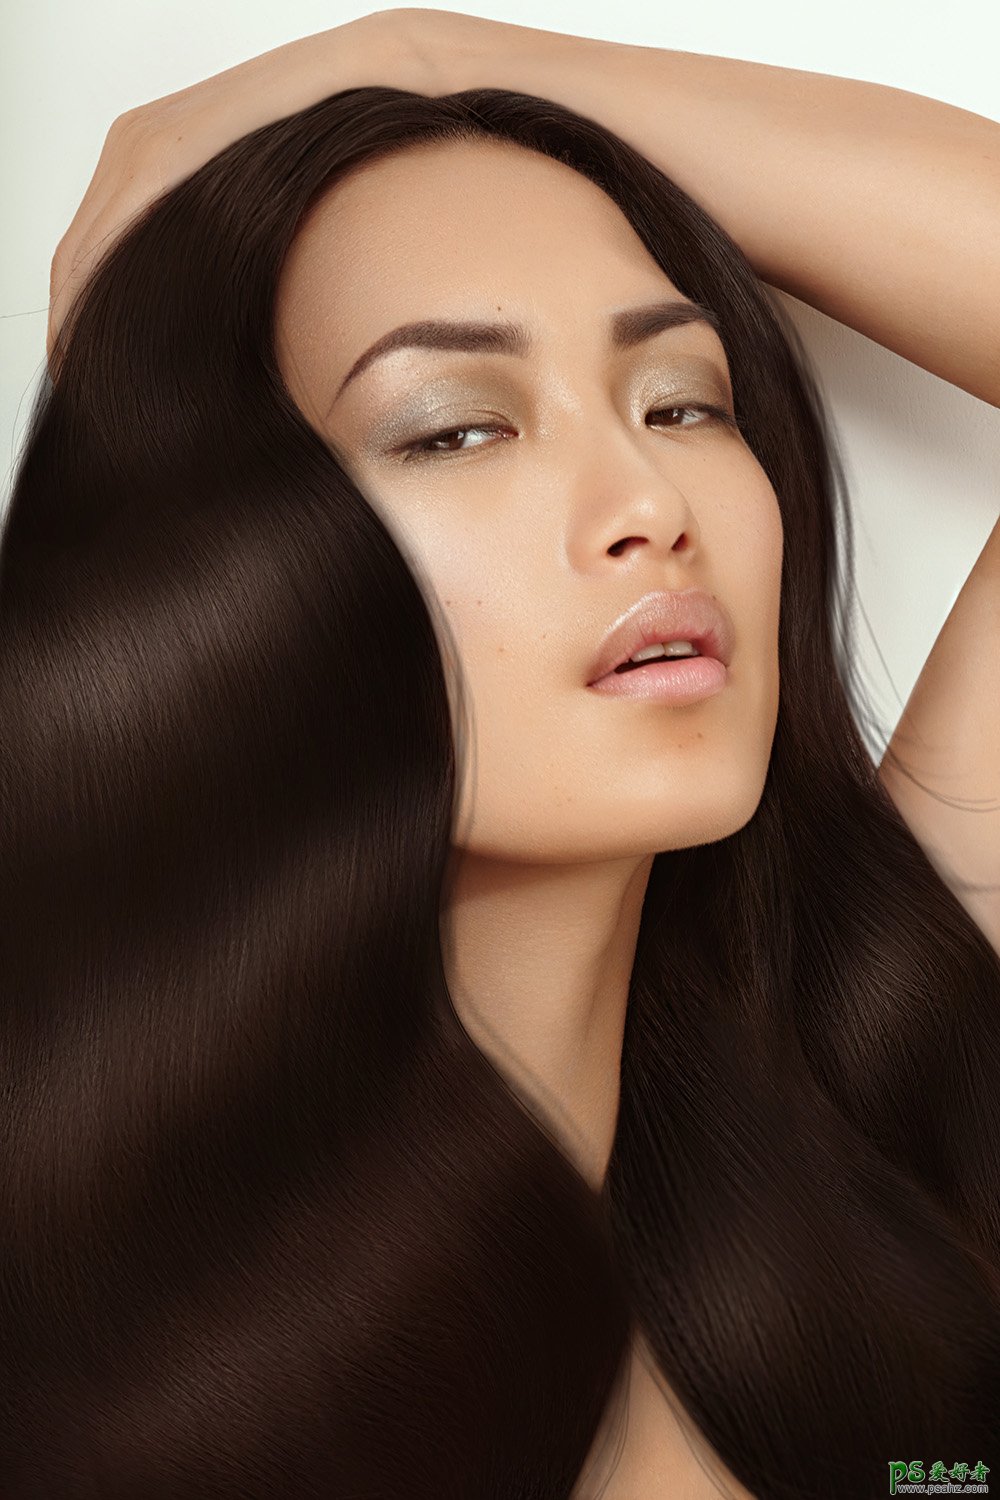 P图技巧教程：学习把美女杂乱的头发丝后期修出柔顺光滑的效果。